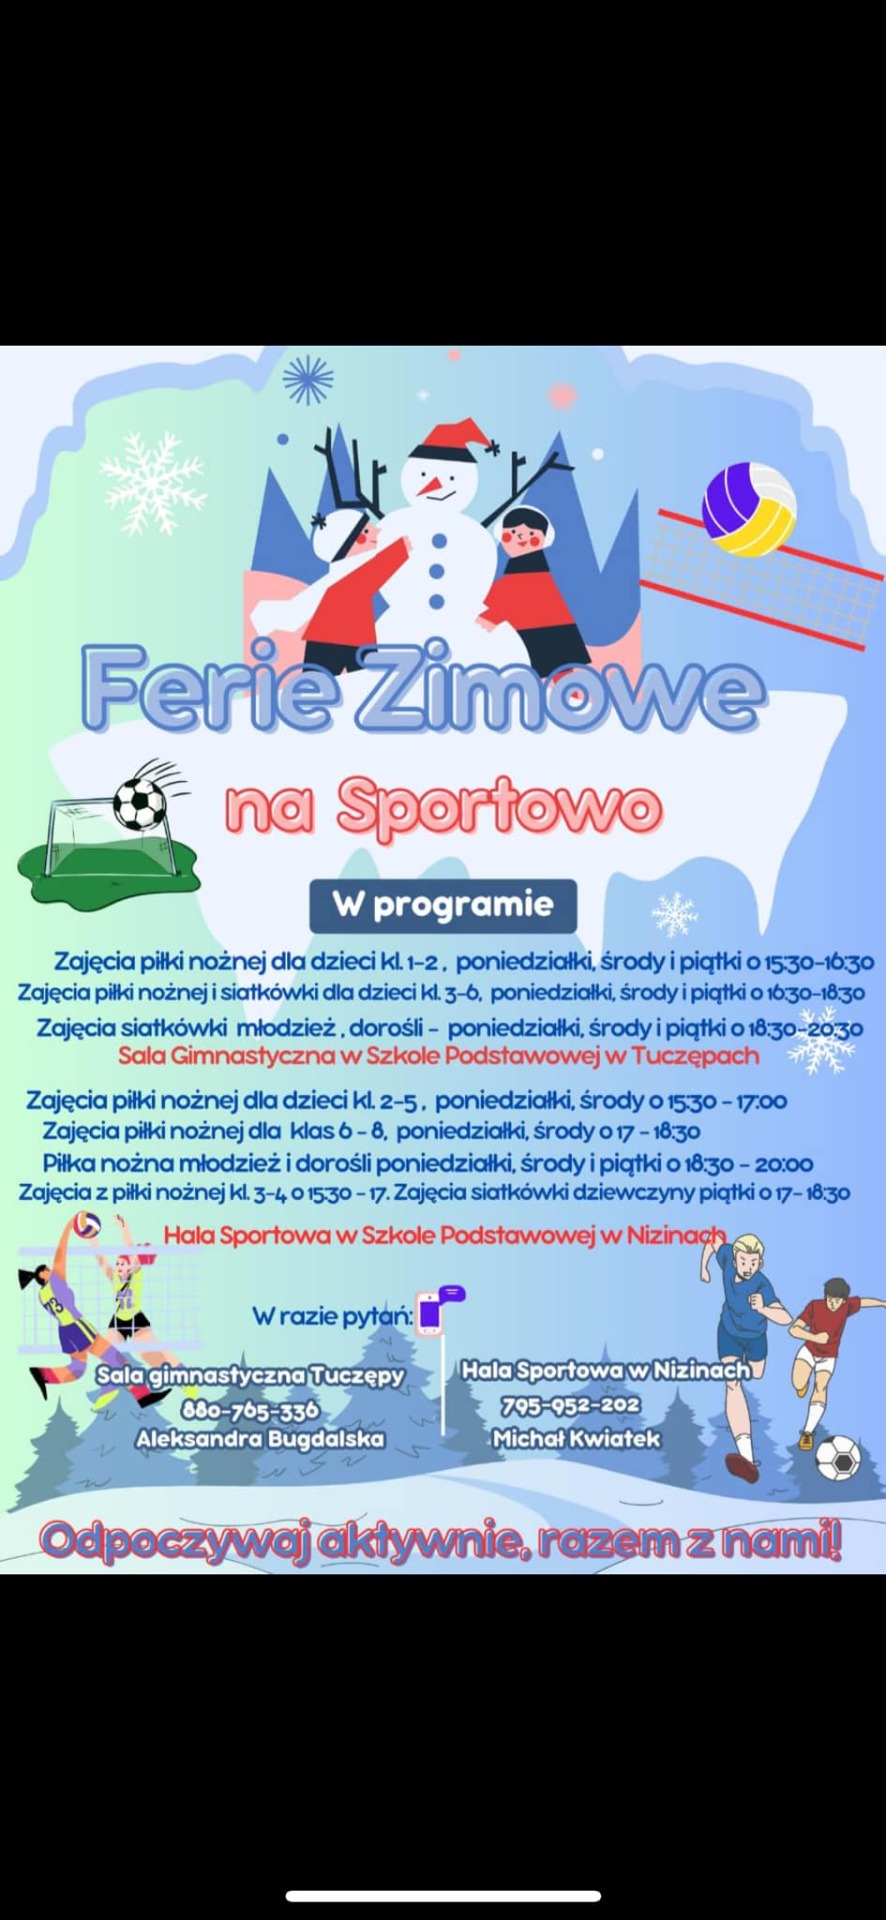 Plakat promujący akcję "Ferie zimowe na sportowe"